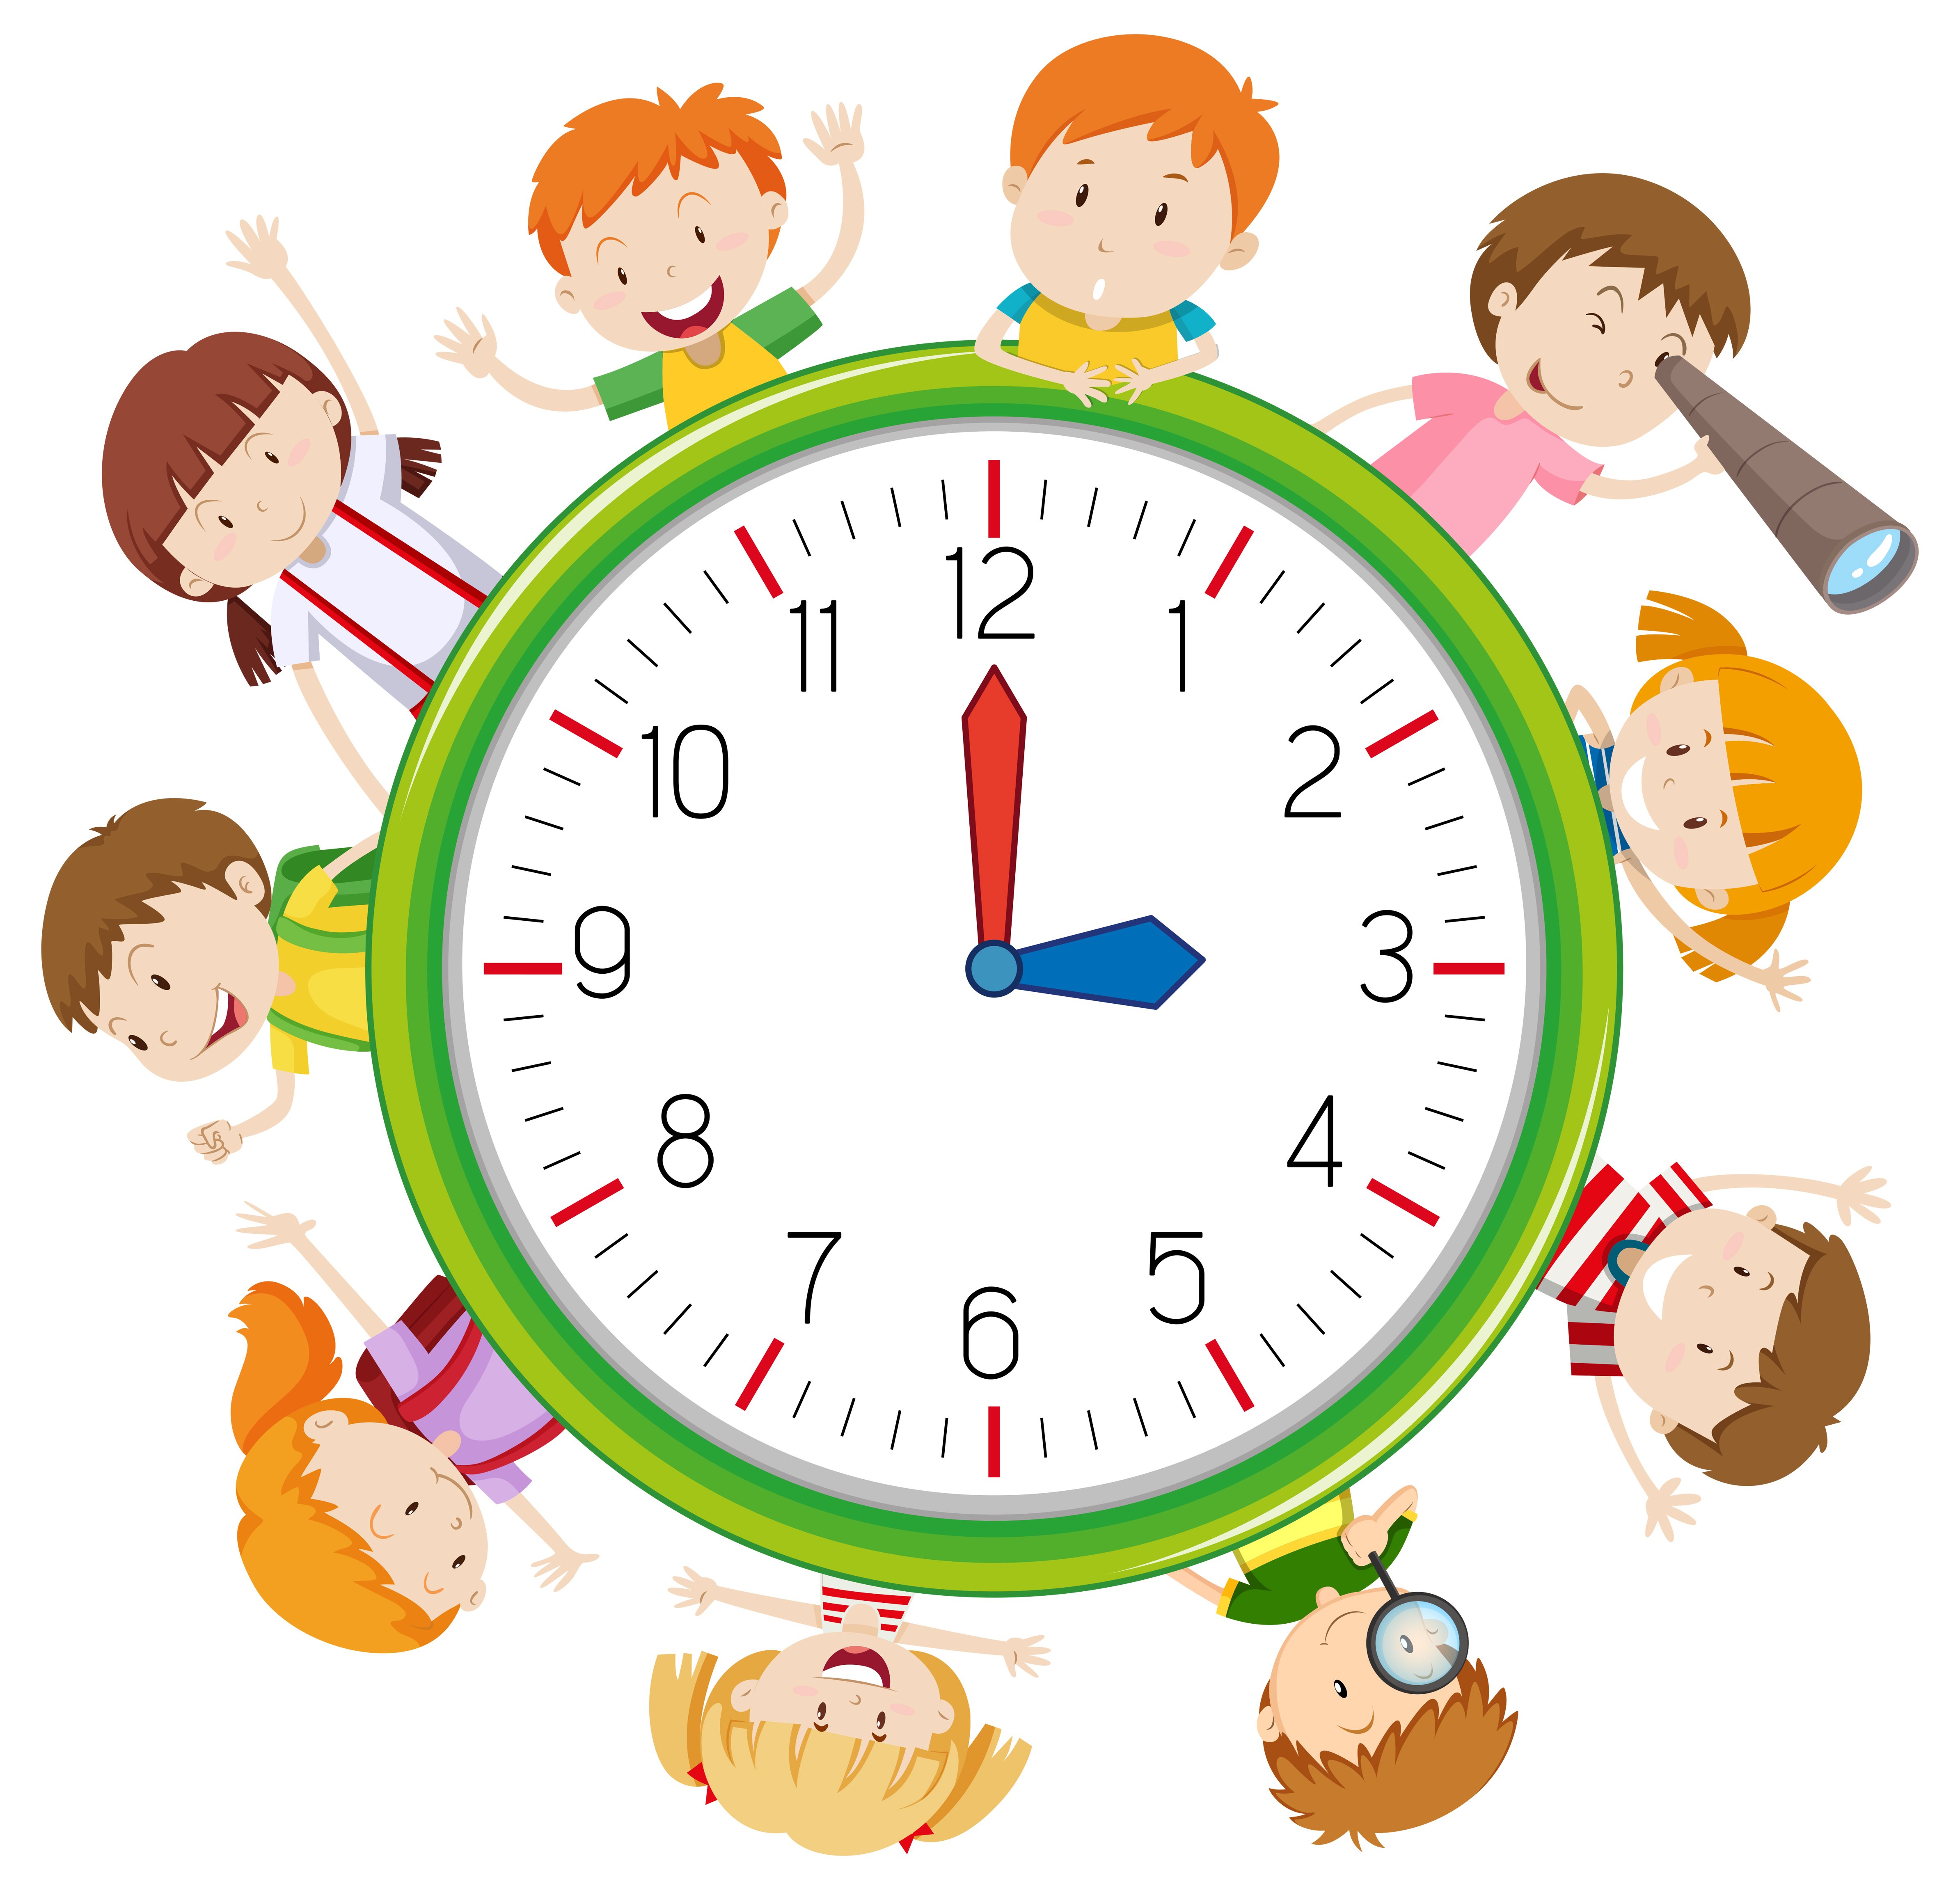 Часы фон для ребенка. Часы с режимом дня для дошкольников. Часы режим дня для детей. Часики для детей. Часы распорядок дня для детей.